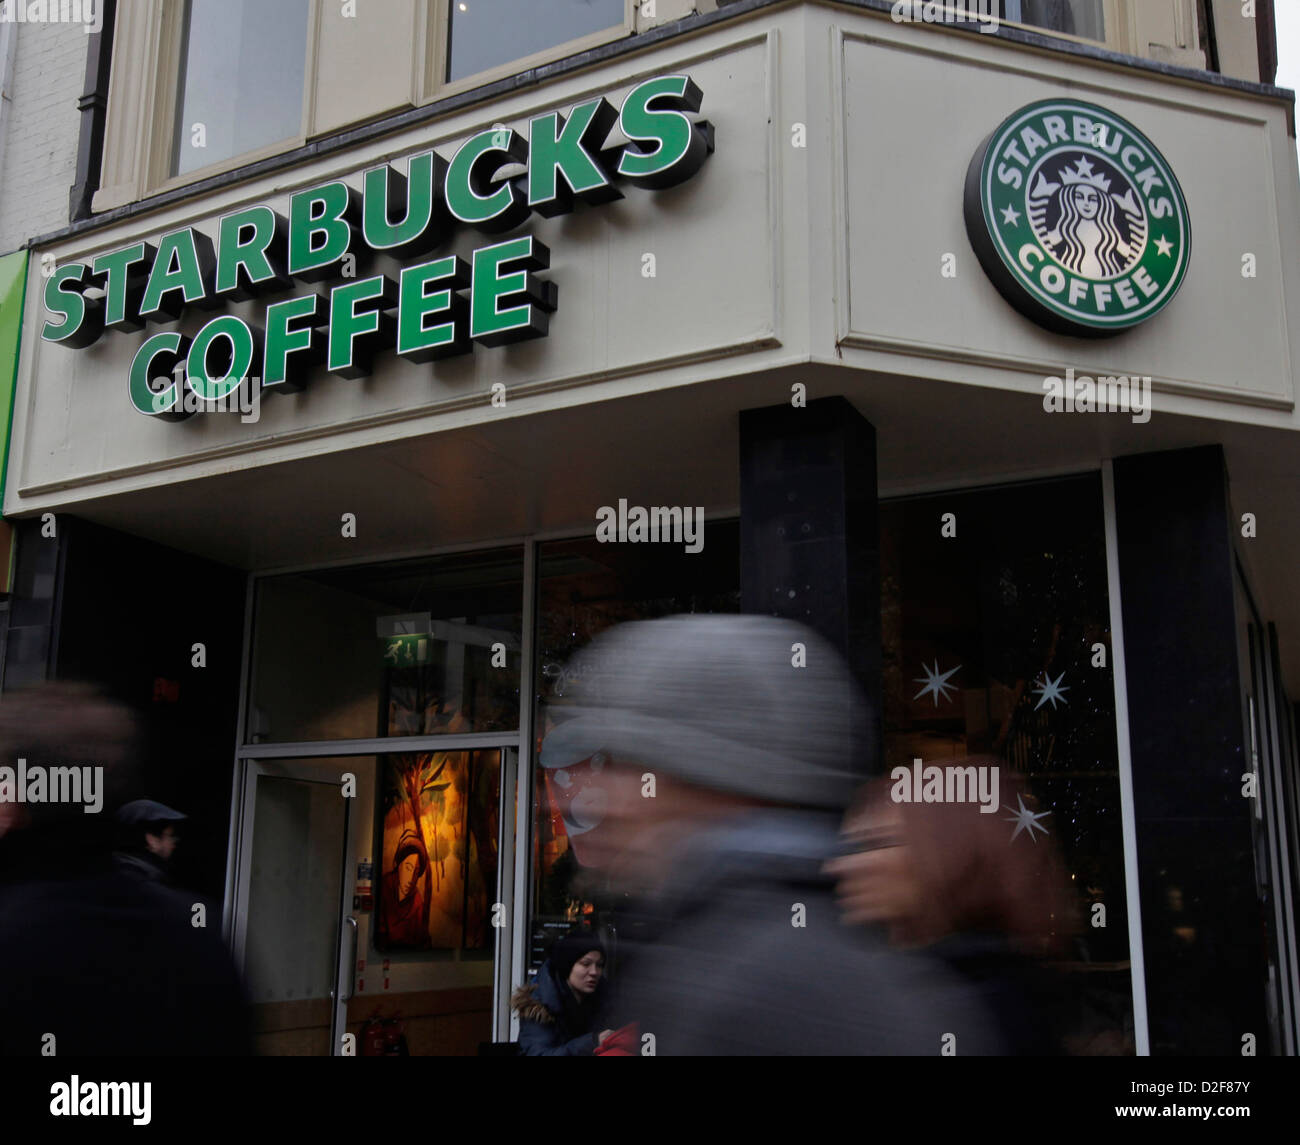 Starbucks Coffee Shops in London allgemeine Ansicht mit Passanten, Bilder während der Organisationen steuern Ermittlungen genommen Stockfoto